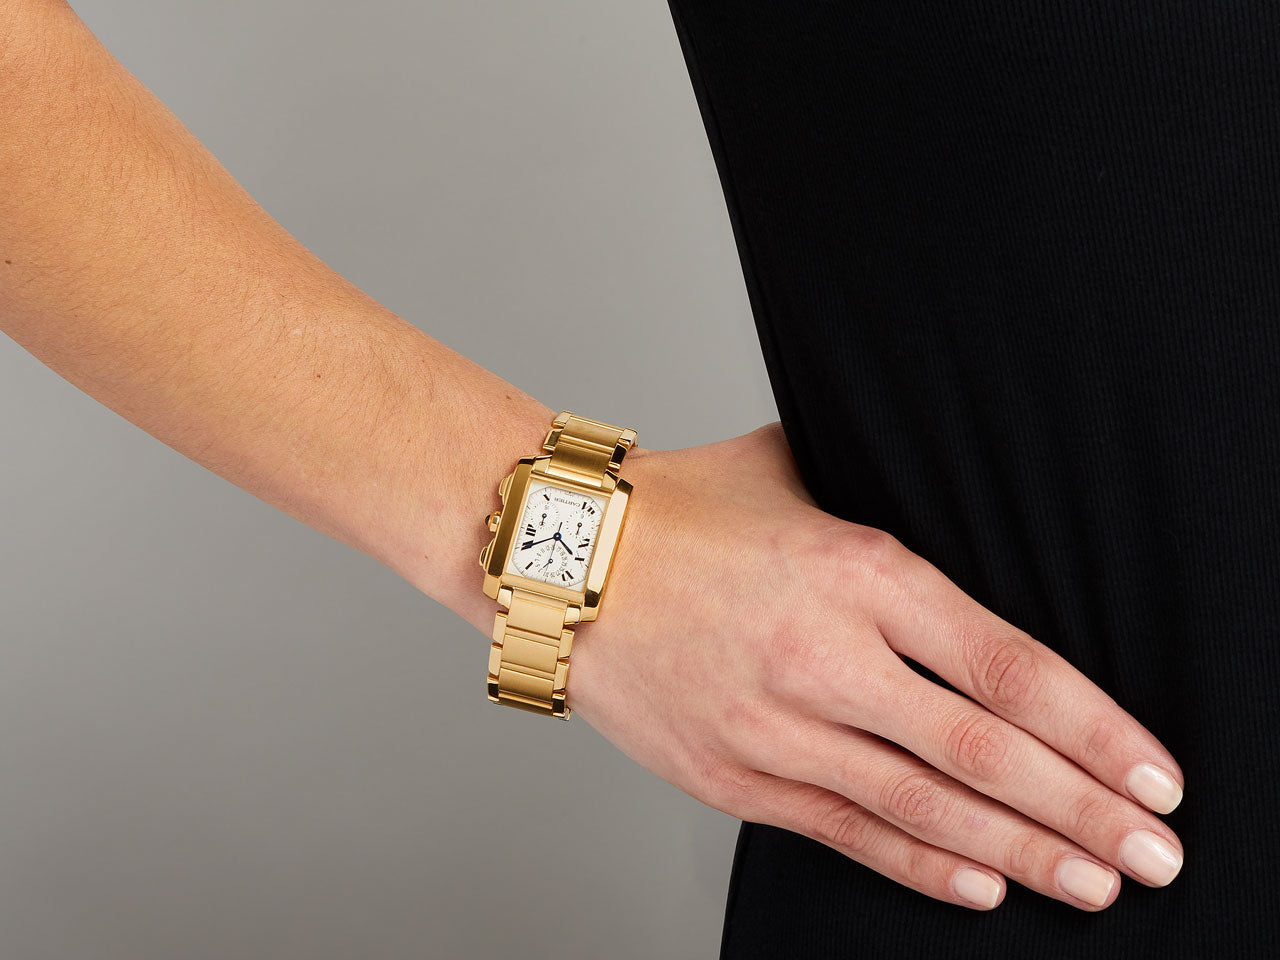 Cartier 'Tank Française Chronoflex' Watch in 18K Gold